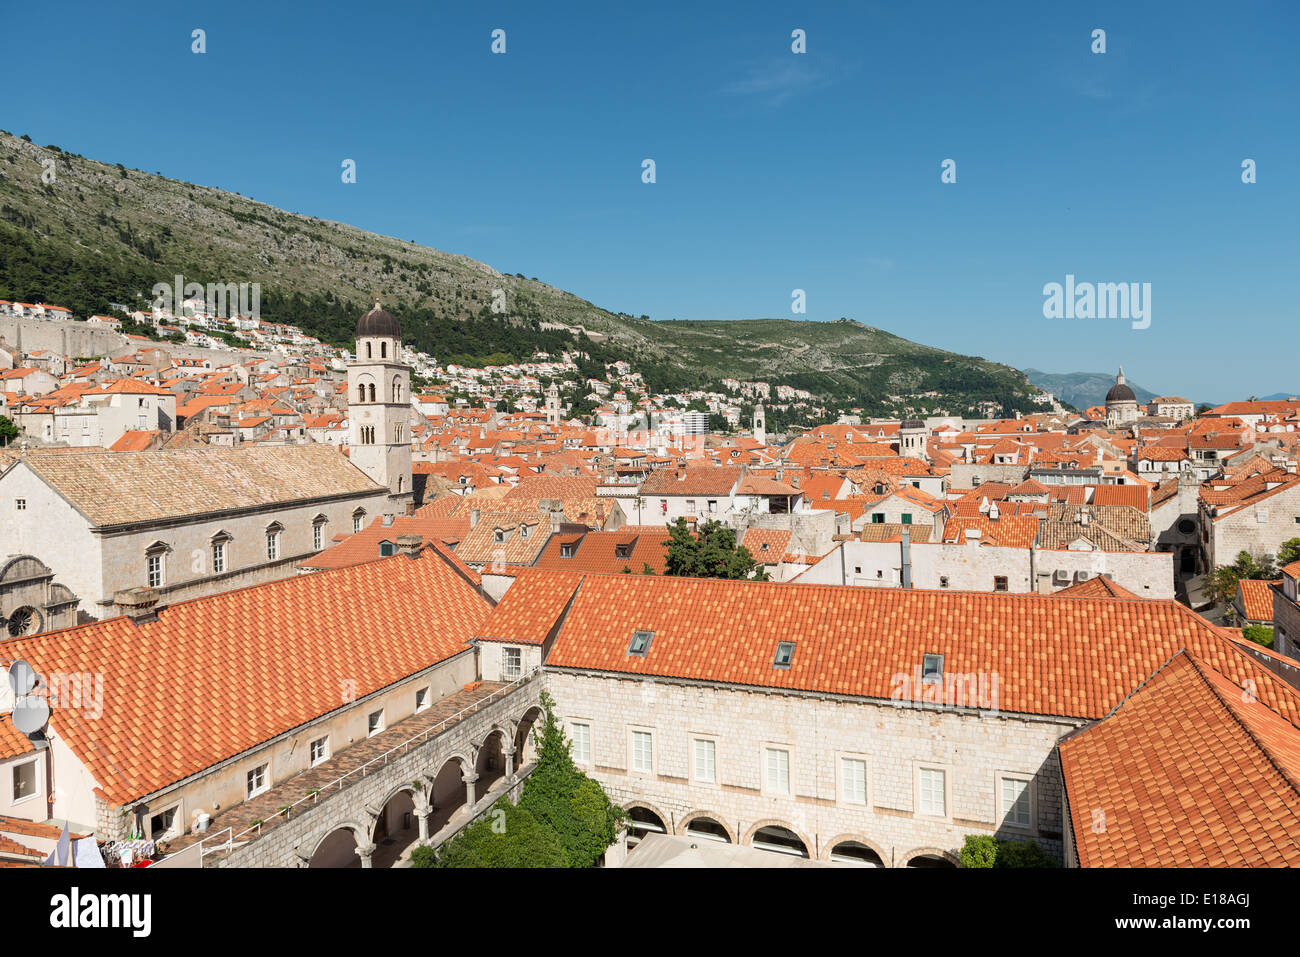 Rote Dächer der Altstadt von Dubrovnik mit Bergen im Hintergrund - Dubrovnik, Kroatien Stockfoto